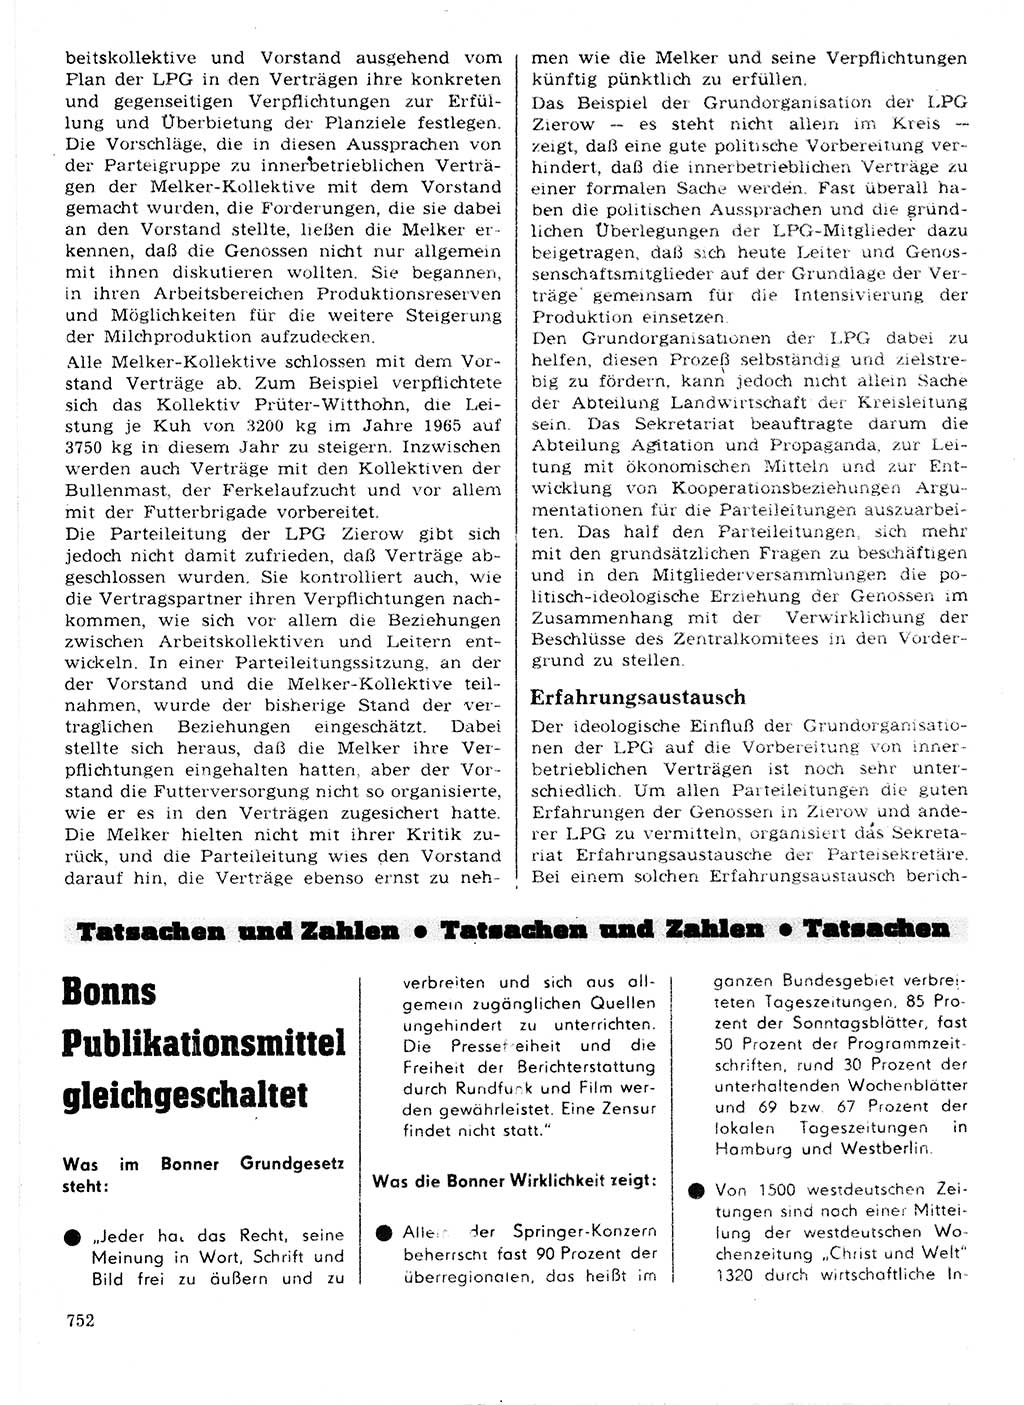 Neuer Weg (NW), Organ des Zentralkomitees (ZK) der SED (Sozialistische Einheitspartei Deutschlands) für Fragen des Parteilebens, 21. Jahrgang [Deutsche Demokratische Republik (DDR)] 1966, Seite 752 (NW ZK SED DDR 1966, S. 752)